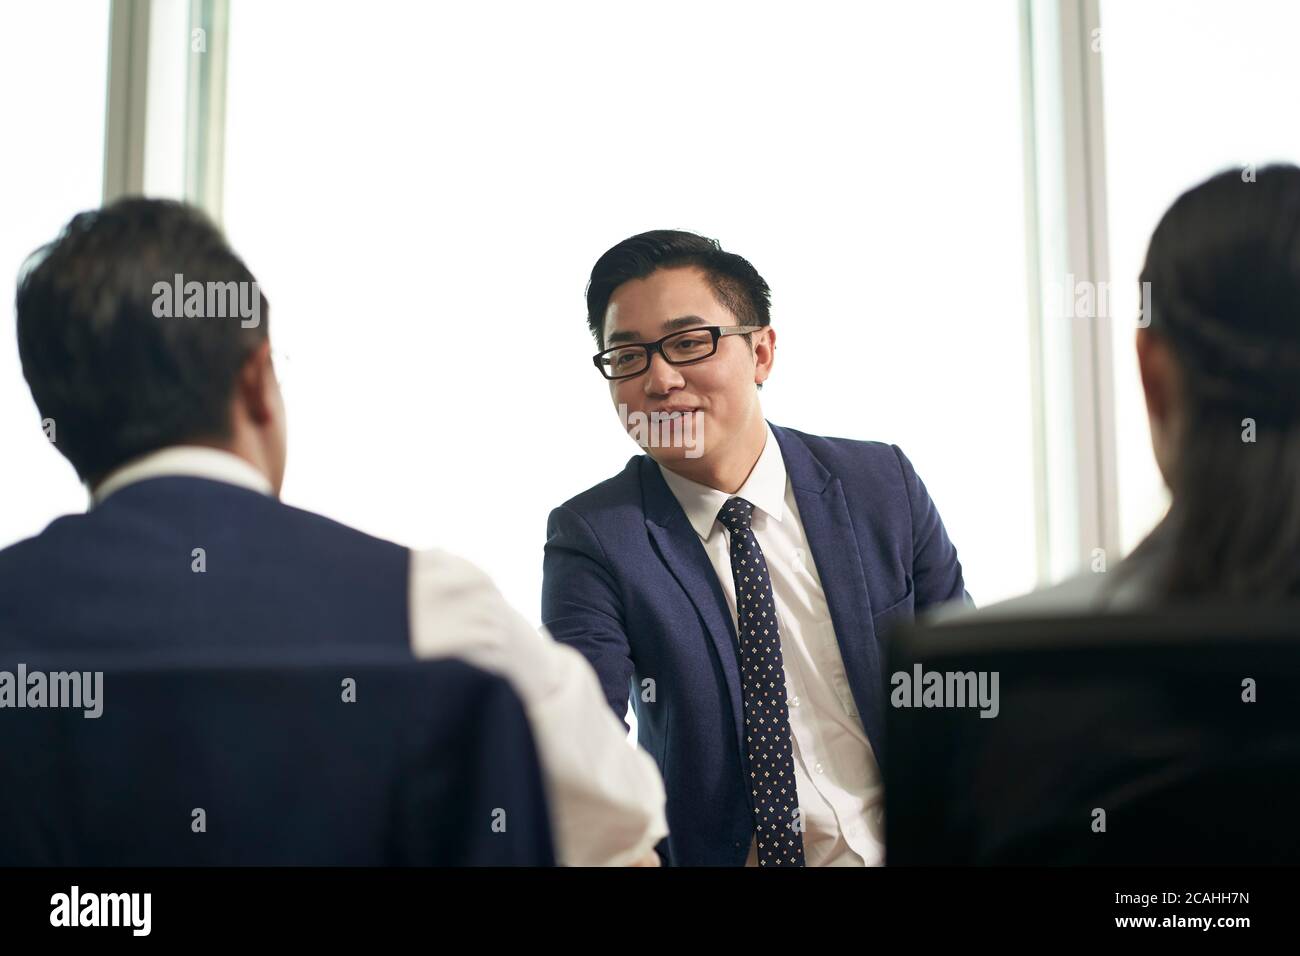 giovane cercatore di lavoro asiatico scuotendo le mani con il responsabile delle risorse umane prima del colloquio di lavoro Foto Stock